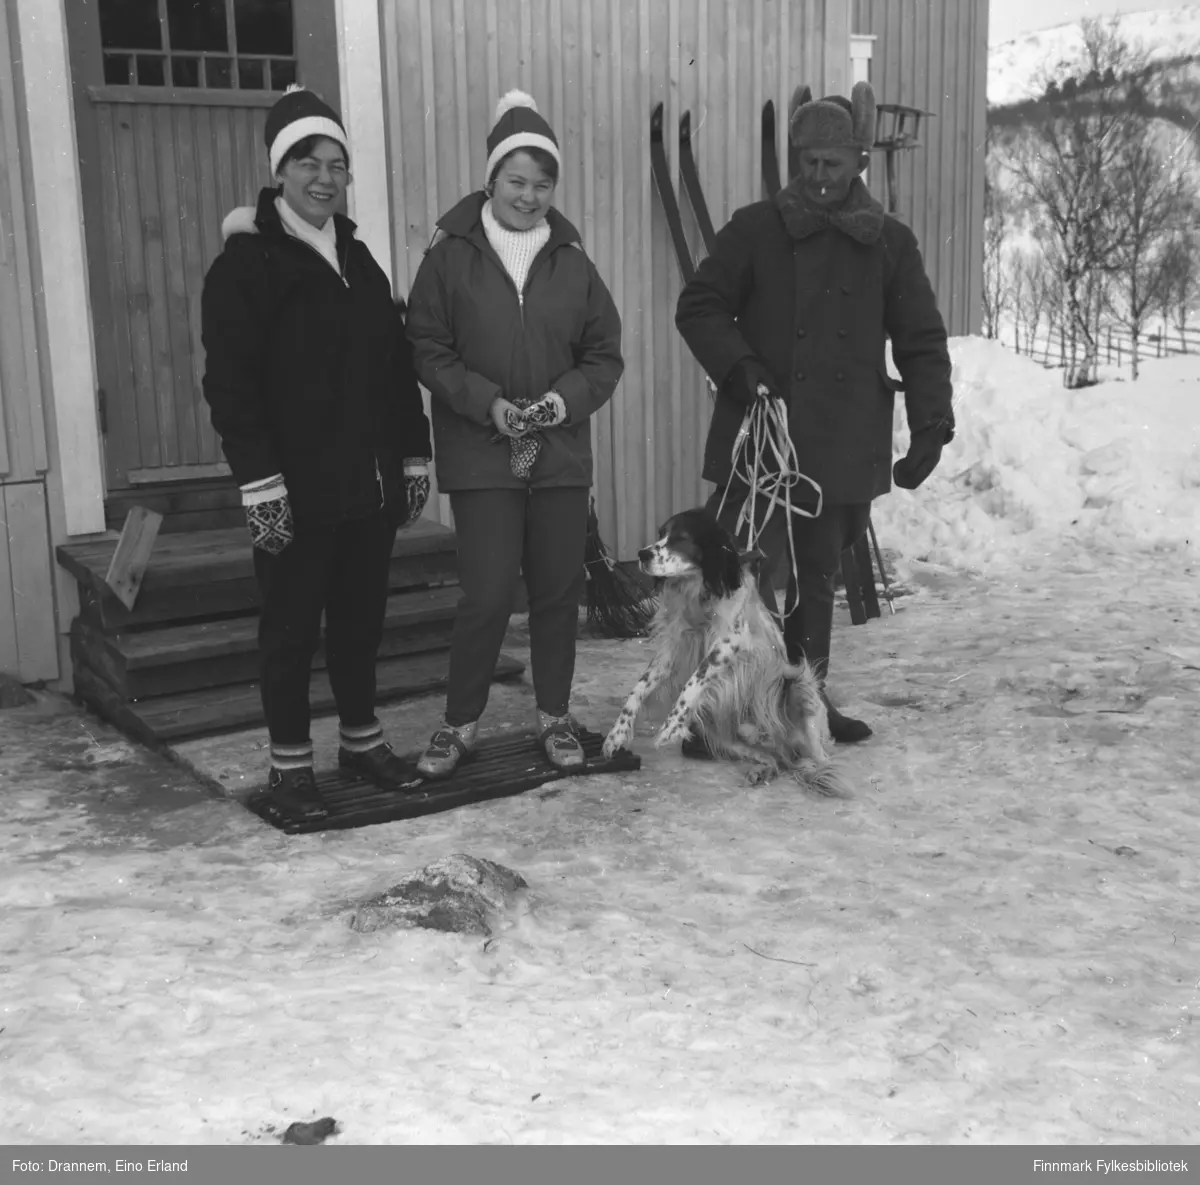 Fra venstre står Jenny Drannem, Turid Karikoski og Uuno Lappalainen med hunden Rexi foran et hus.